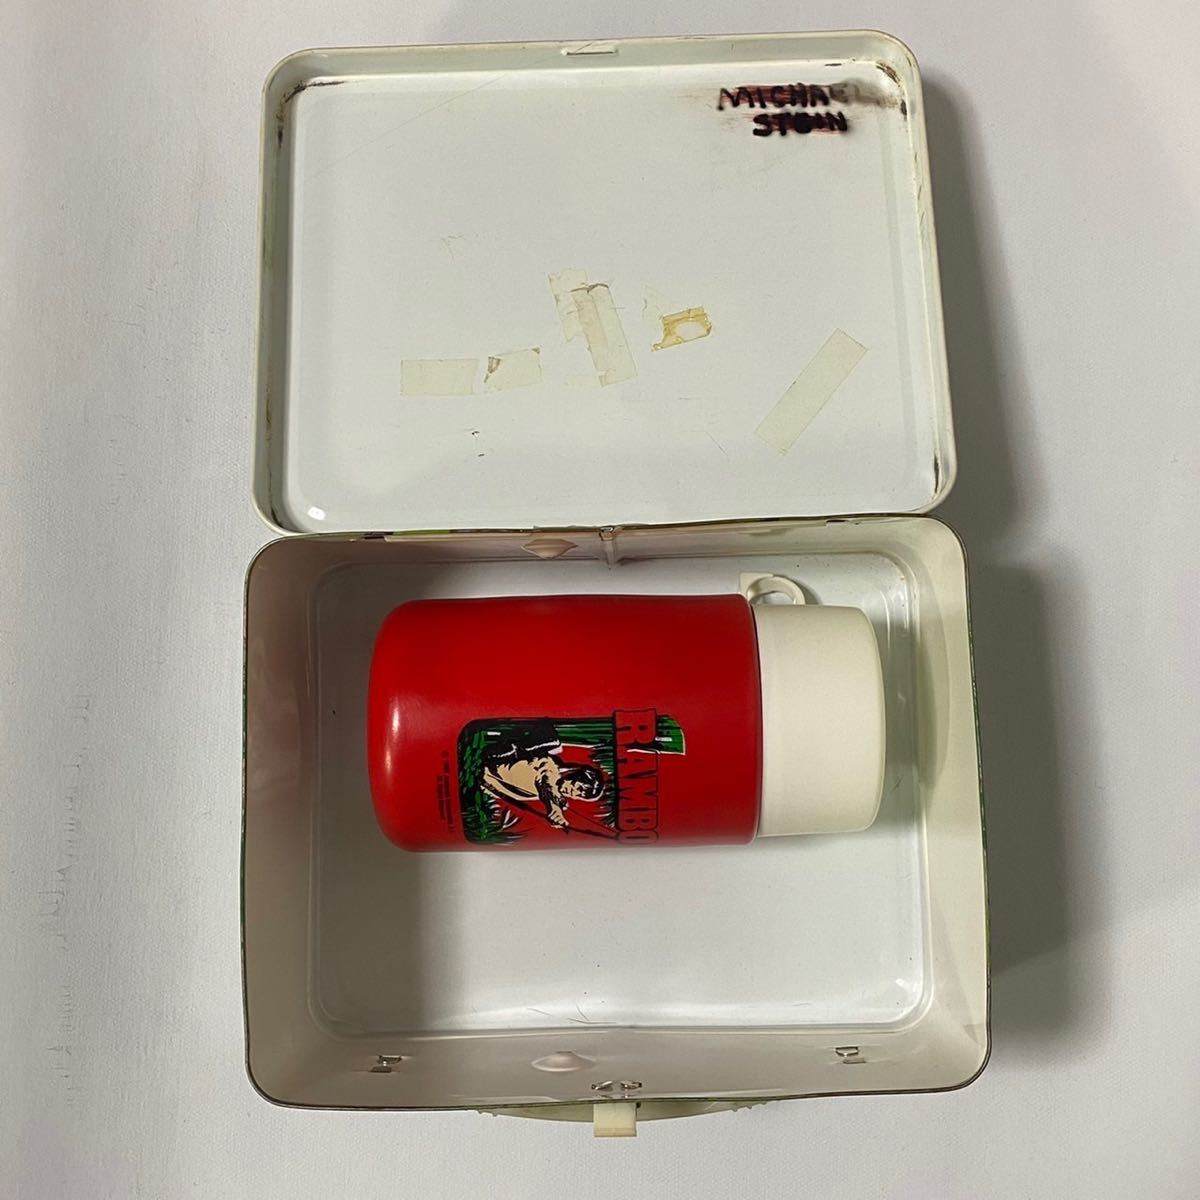 h59 希少 80 年代 RAMBO ランチ ボックス ランボー THERMOS サーモス lunch box ムービー movie カモ 迷彩 ビンテージ VINTAGE 80s